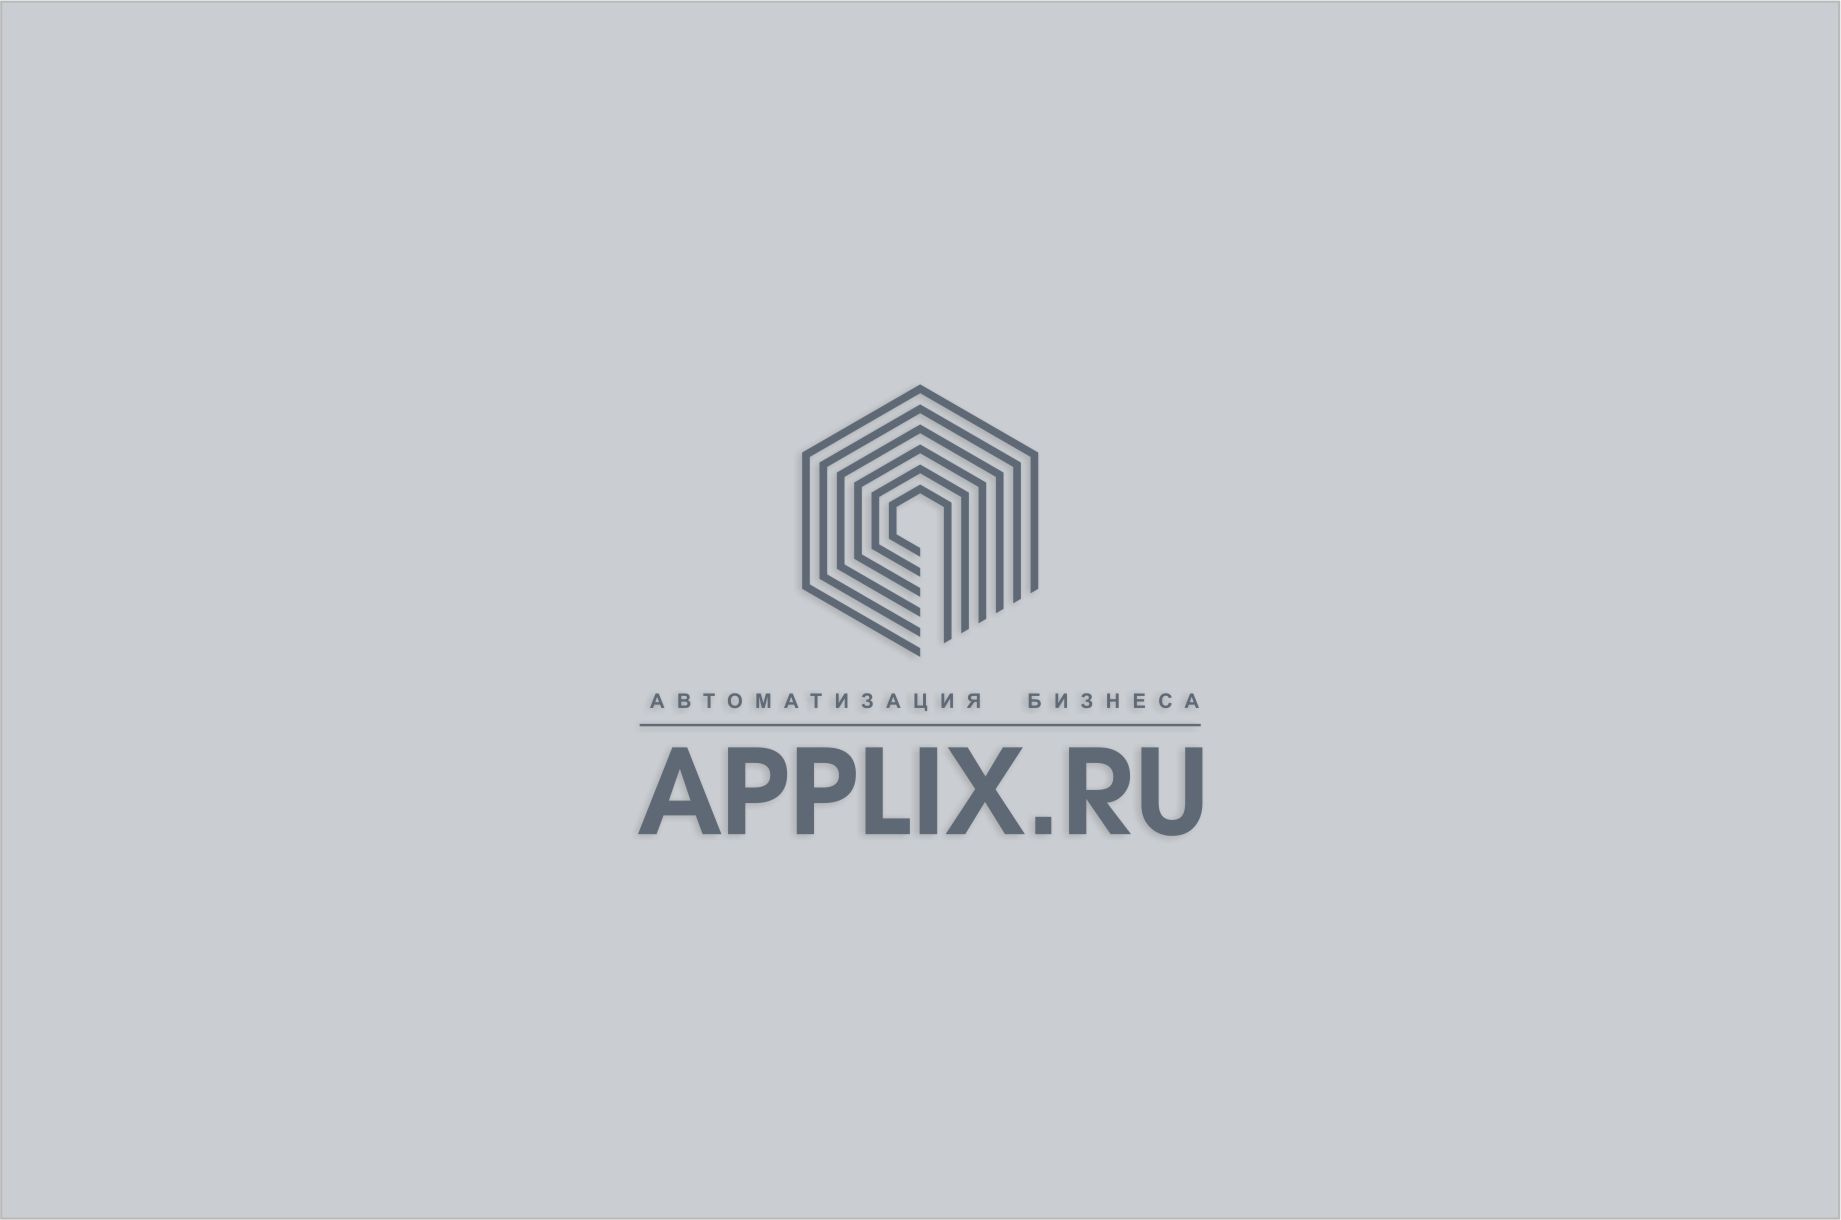 Лого и фирменный стиль для applix.ru / APPLIX.RU - дизайнер SobolevS21